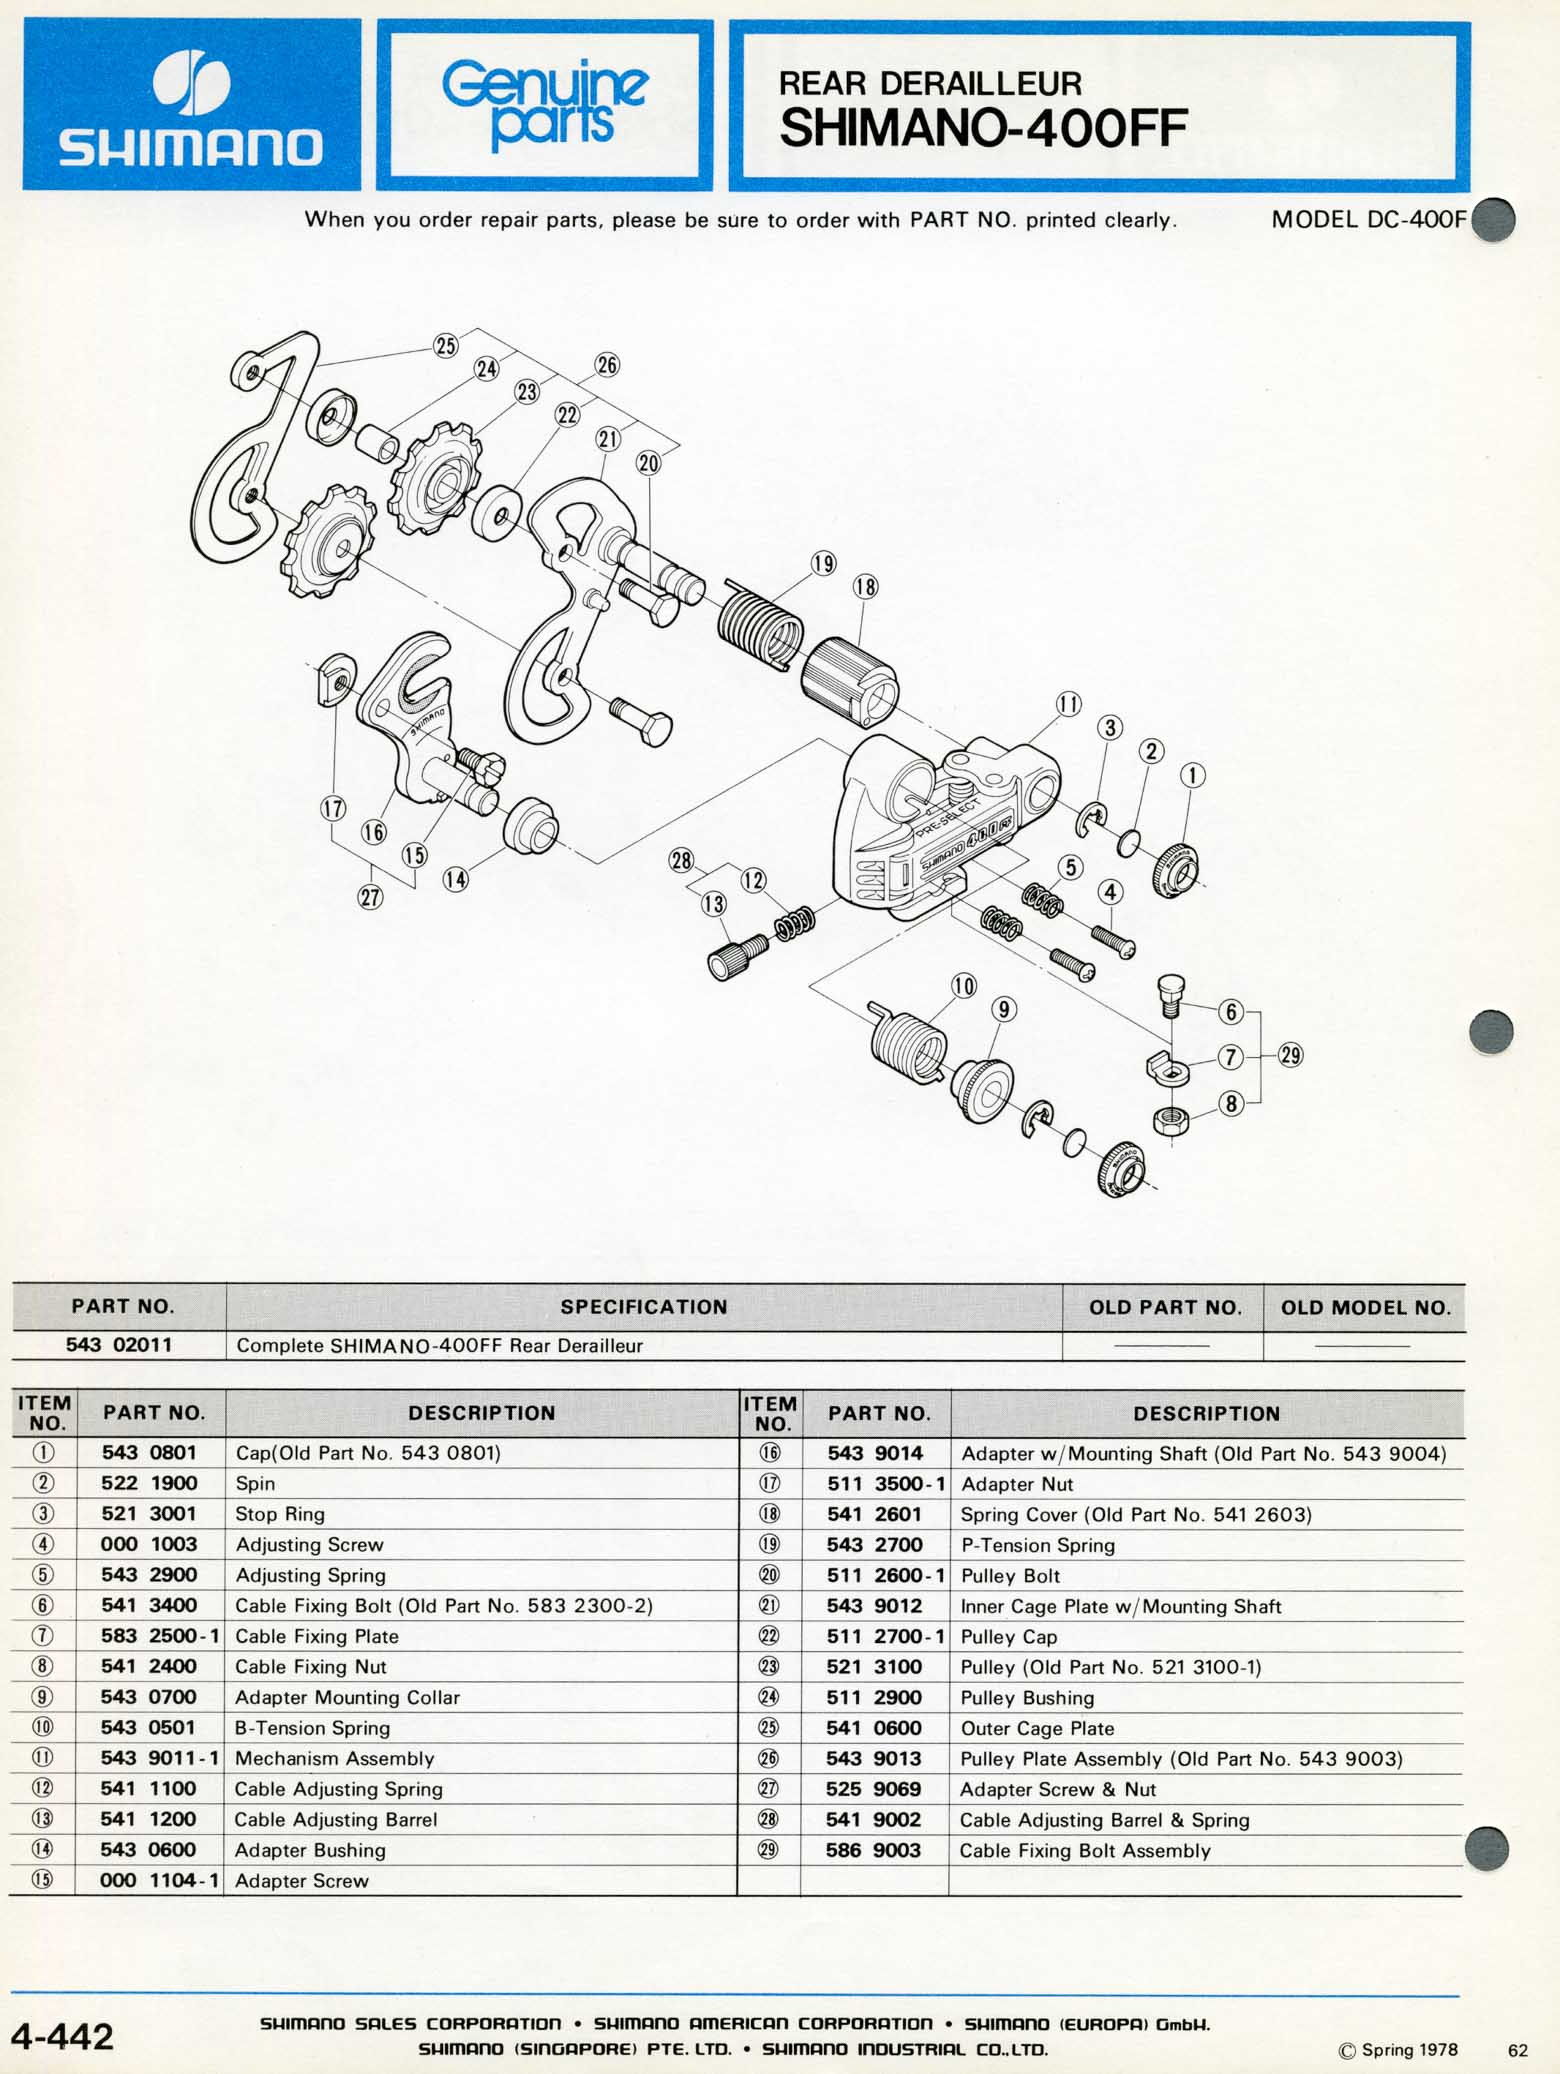 Shimano Bicycle Parts - 1978 scan 08 main image